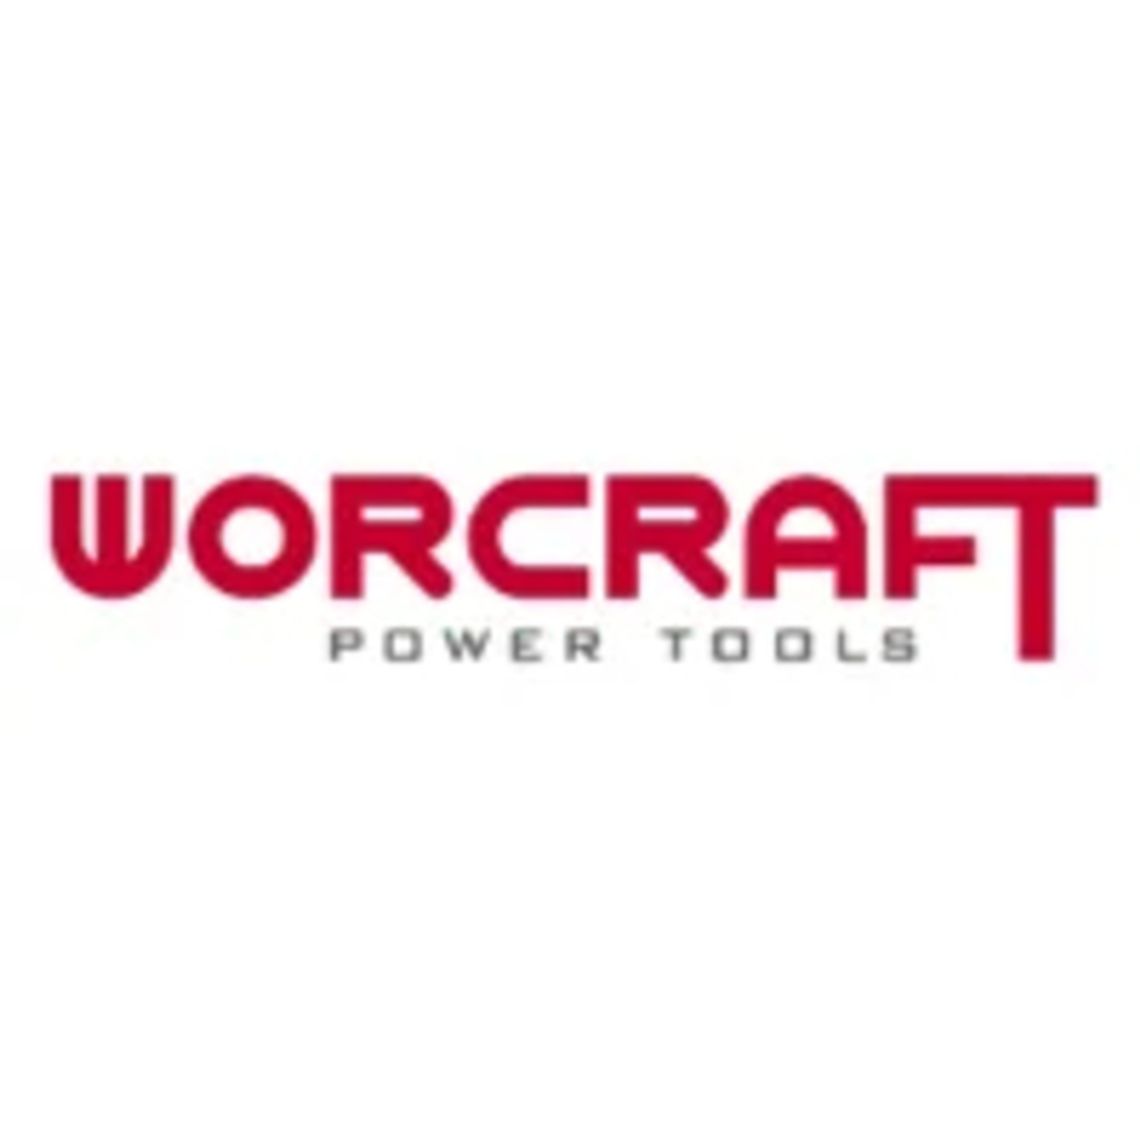 Worcraft.pl - Nowoczesne narzędzia elektryczne i ogrodowe